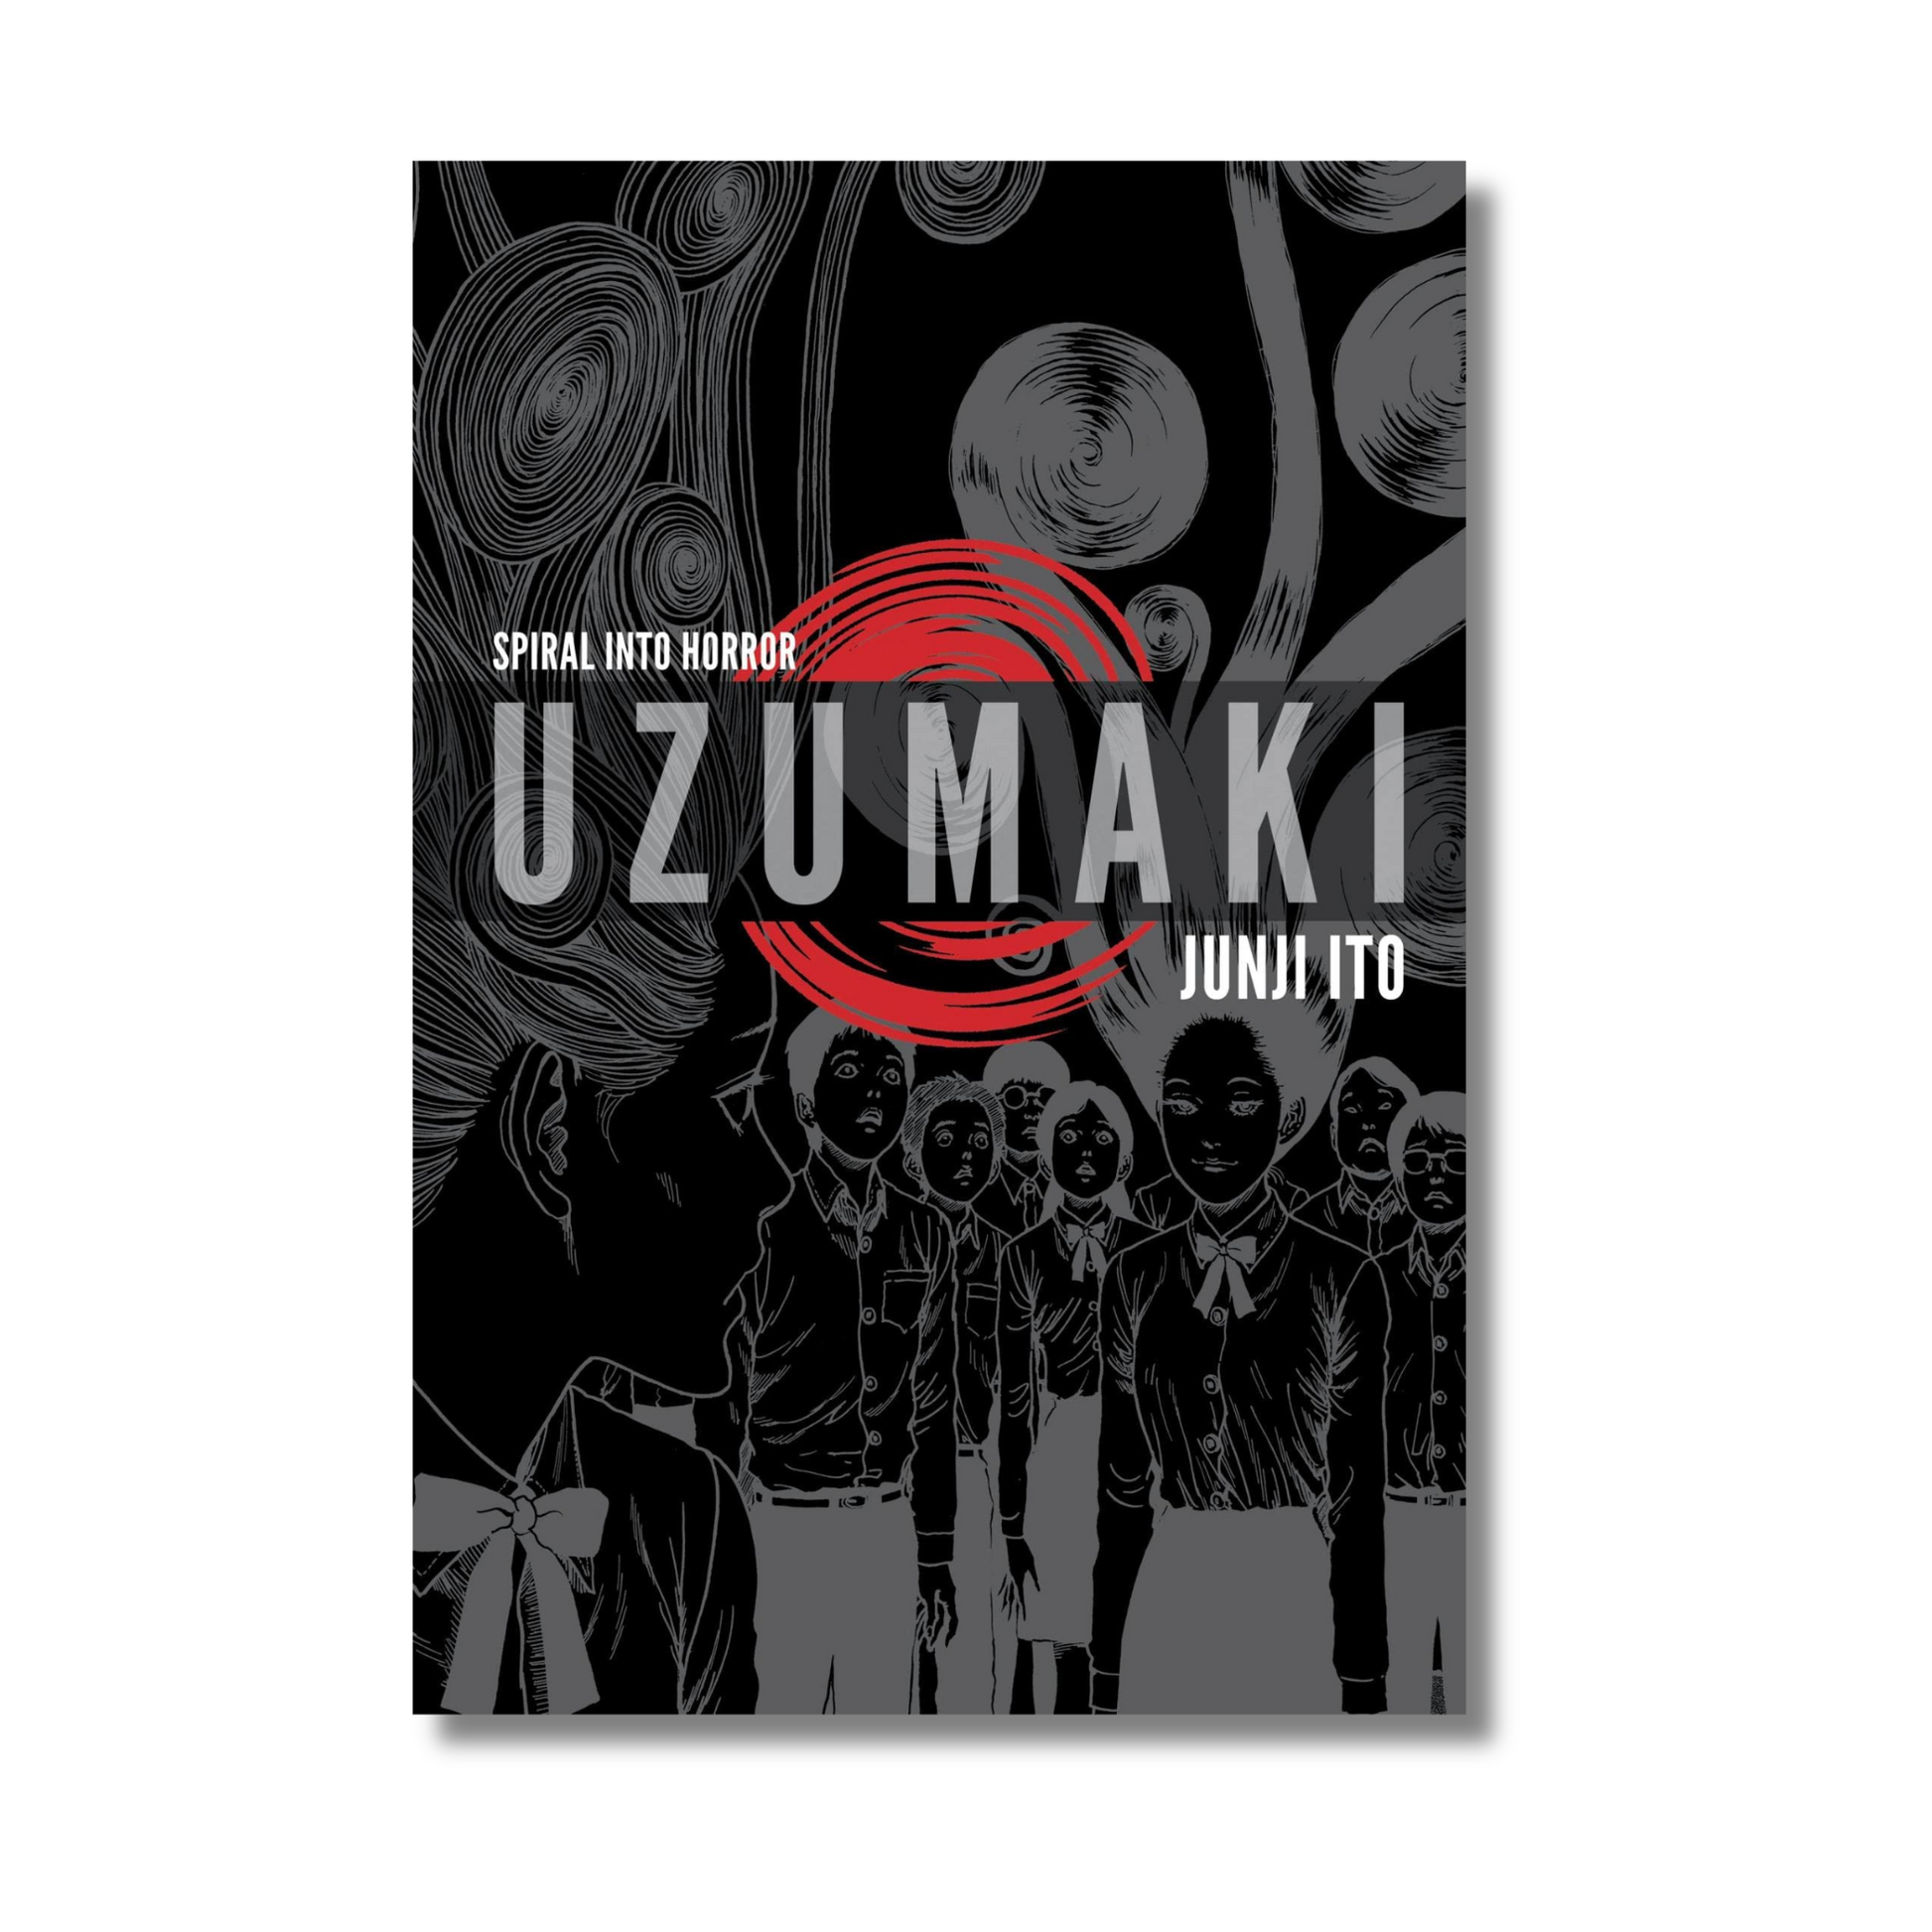 Uzumaki Manga 3 In 1 Edition By Junji Ito (Hardcover)- Gyaanstore